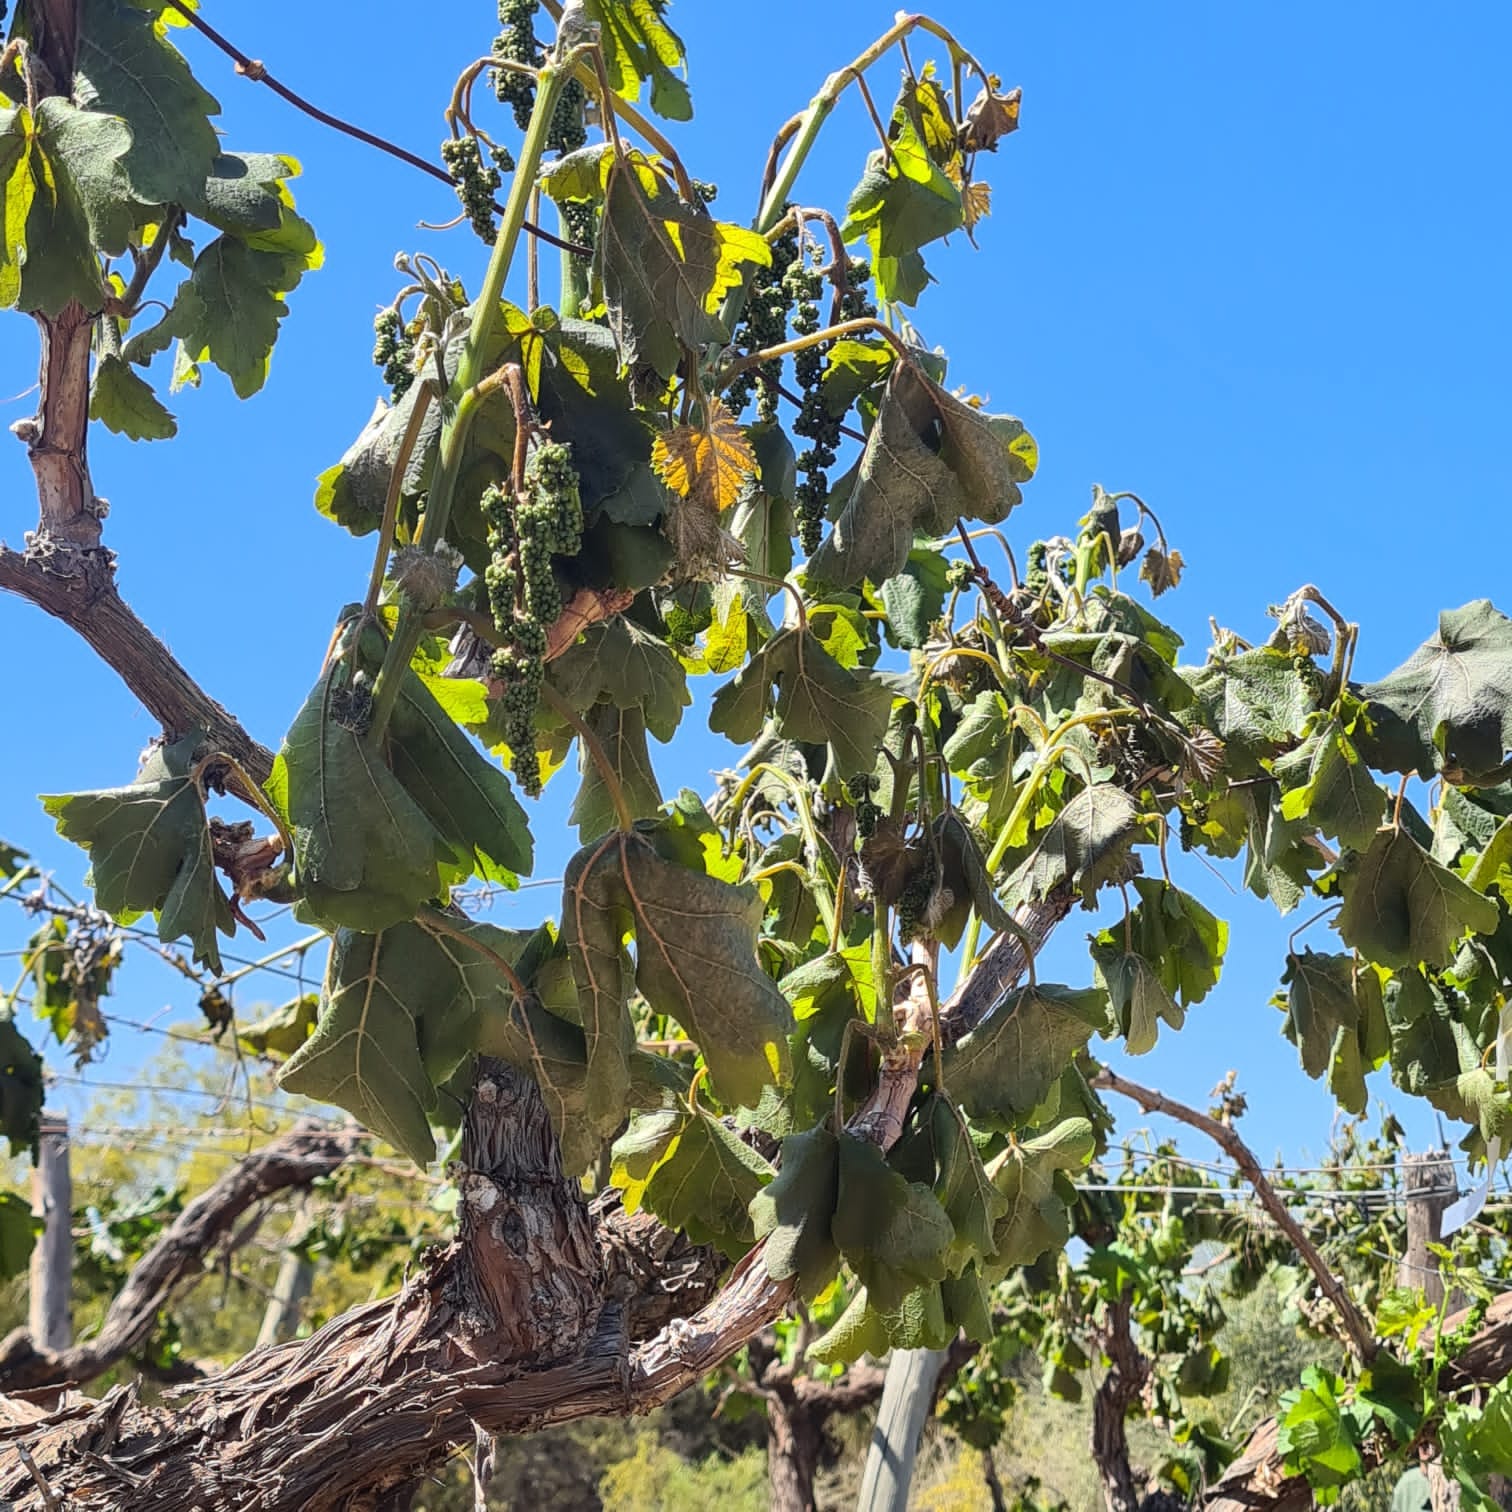 En octubre hubo malas condiciones climáticas en general. Sin embargo, eso no afecta el auge de las cosechas vitivinícolas